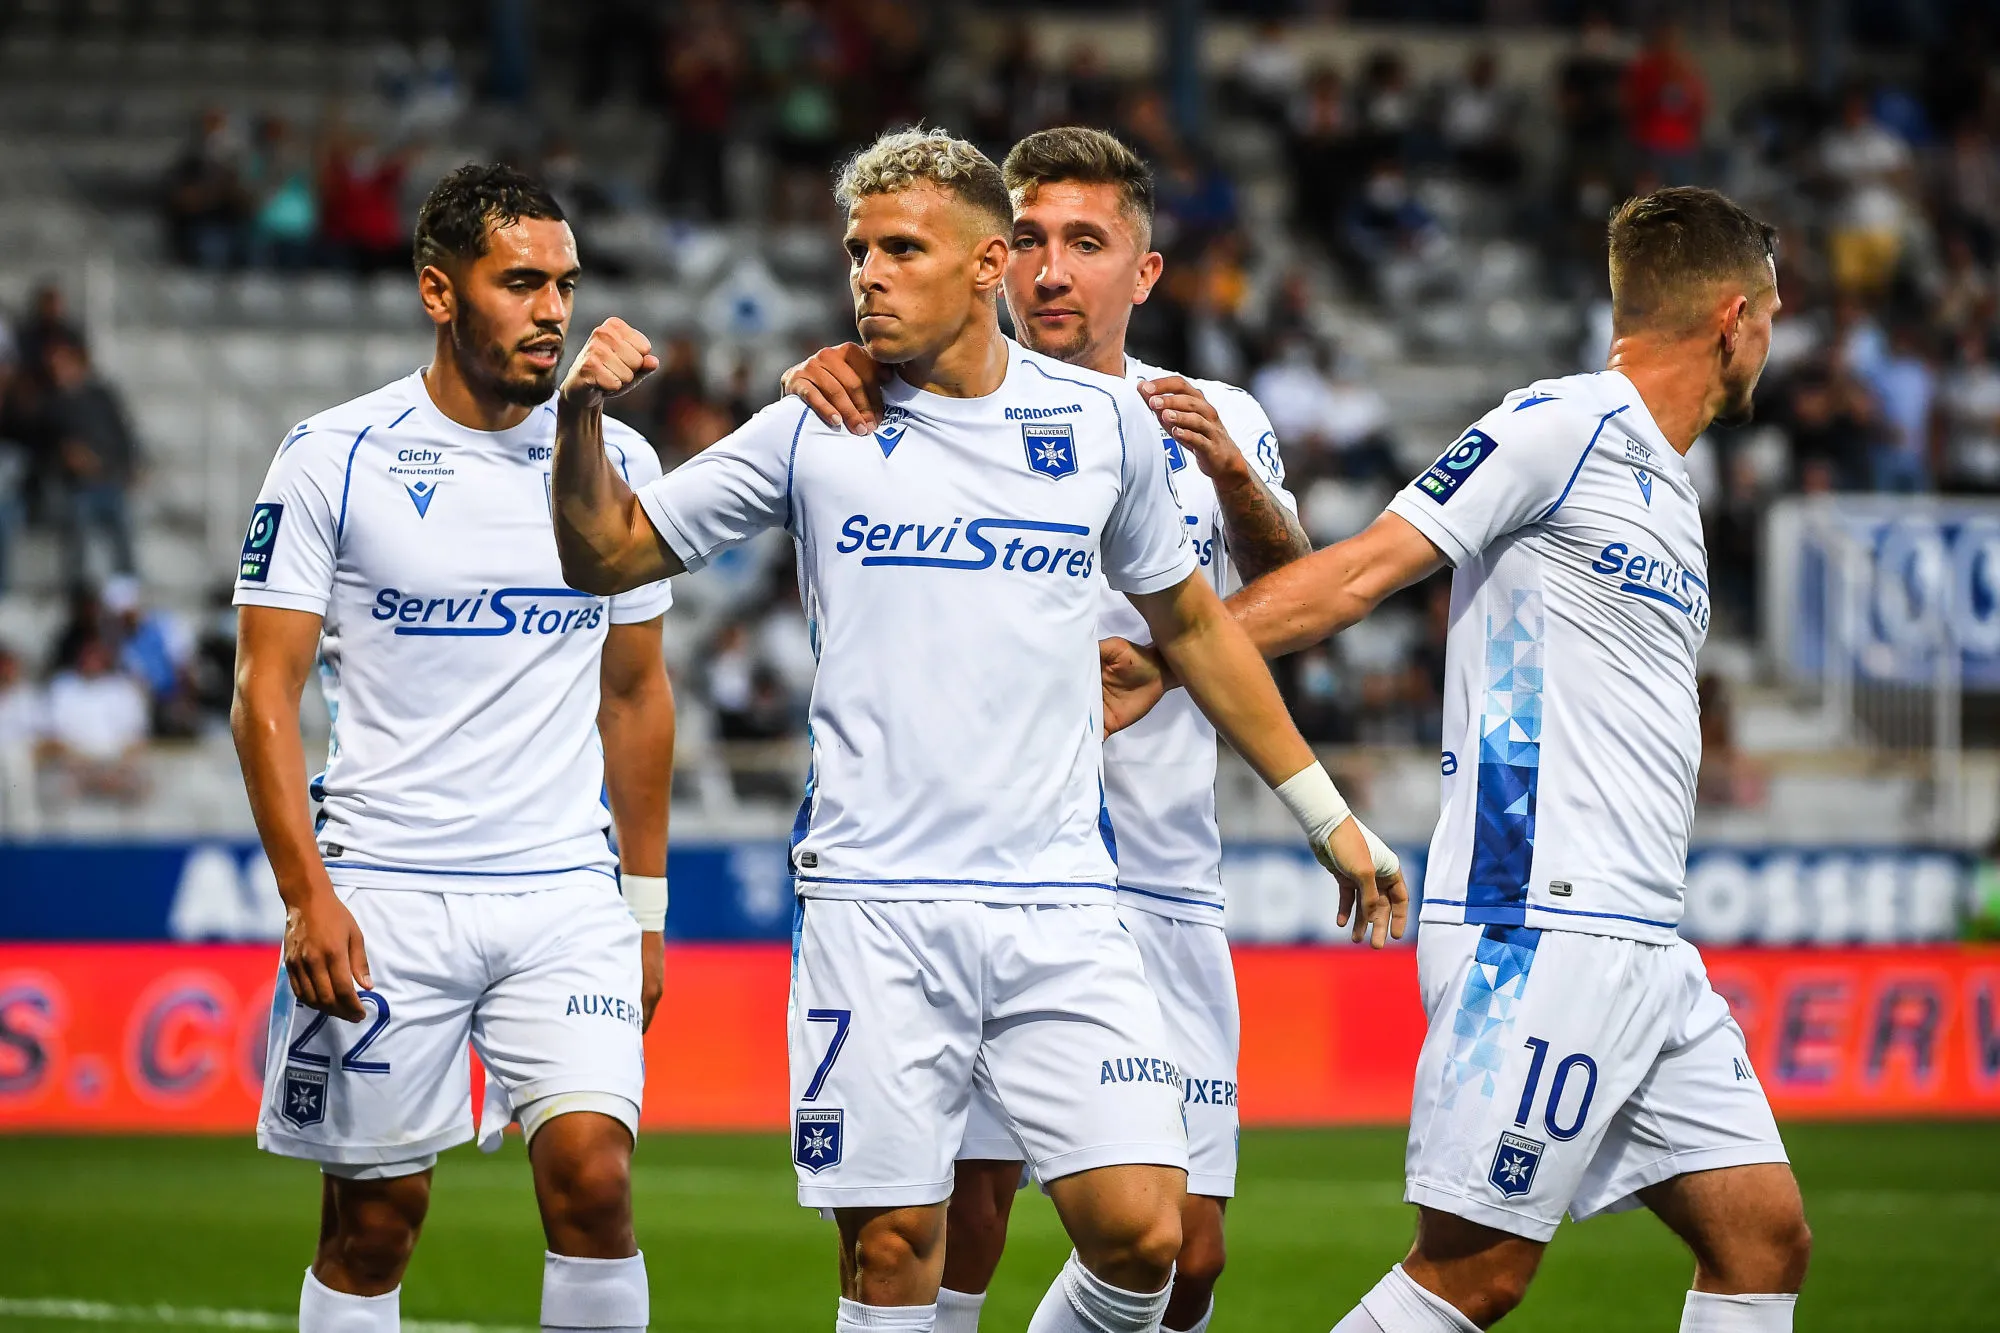 Pronostic Auxerre Niort : Analyse, cotes et prono du match de Ligue 2